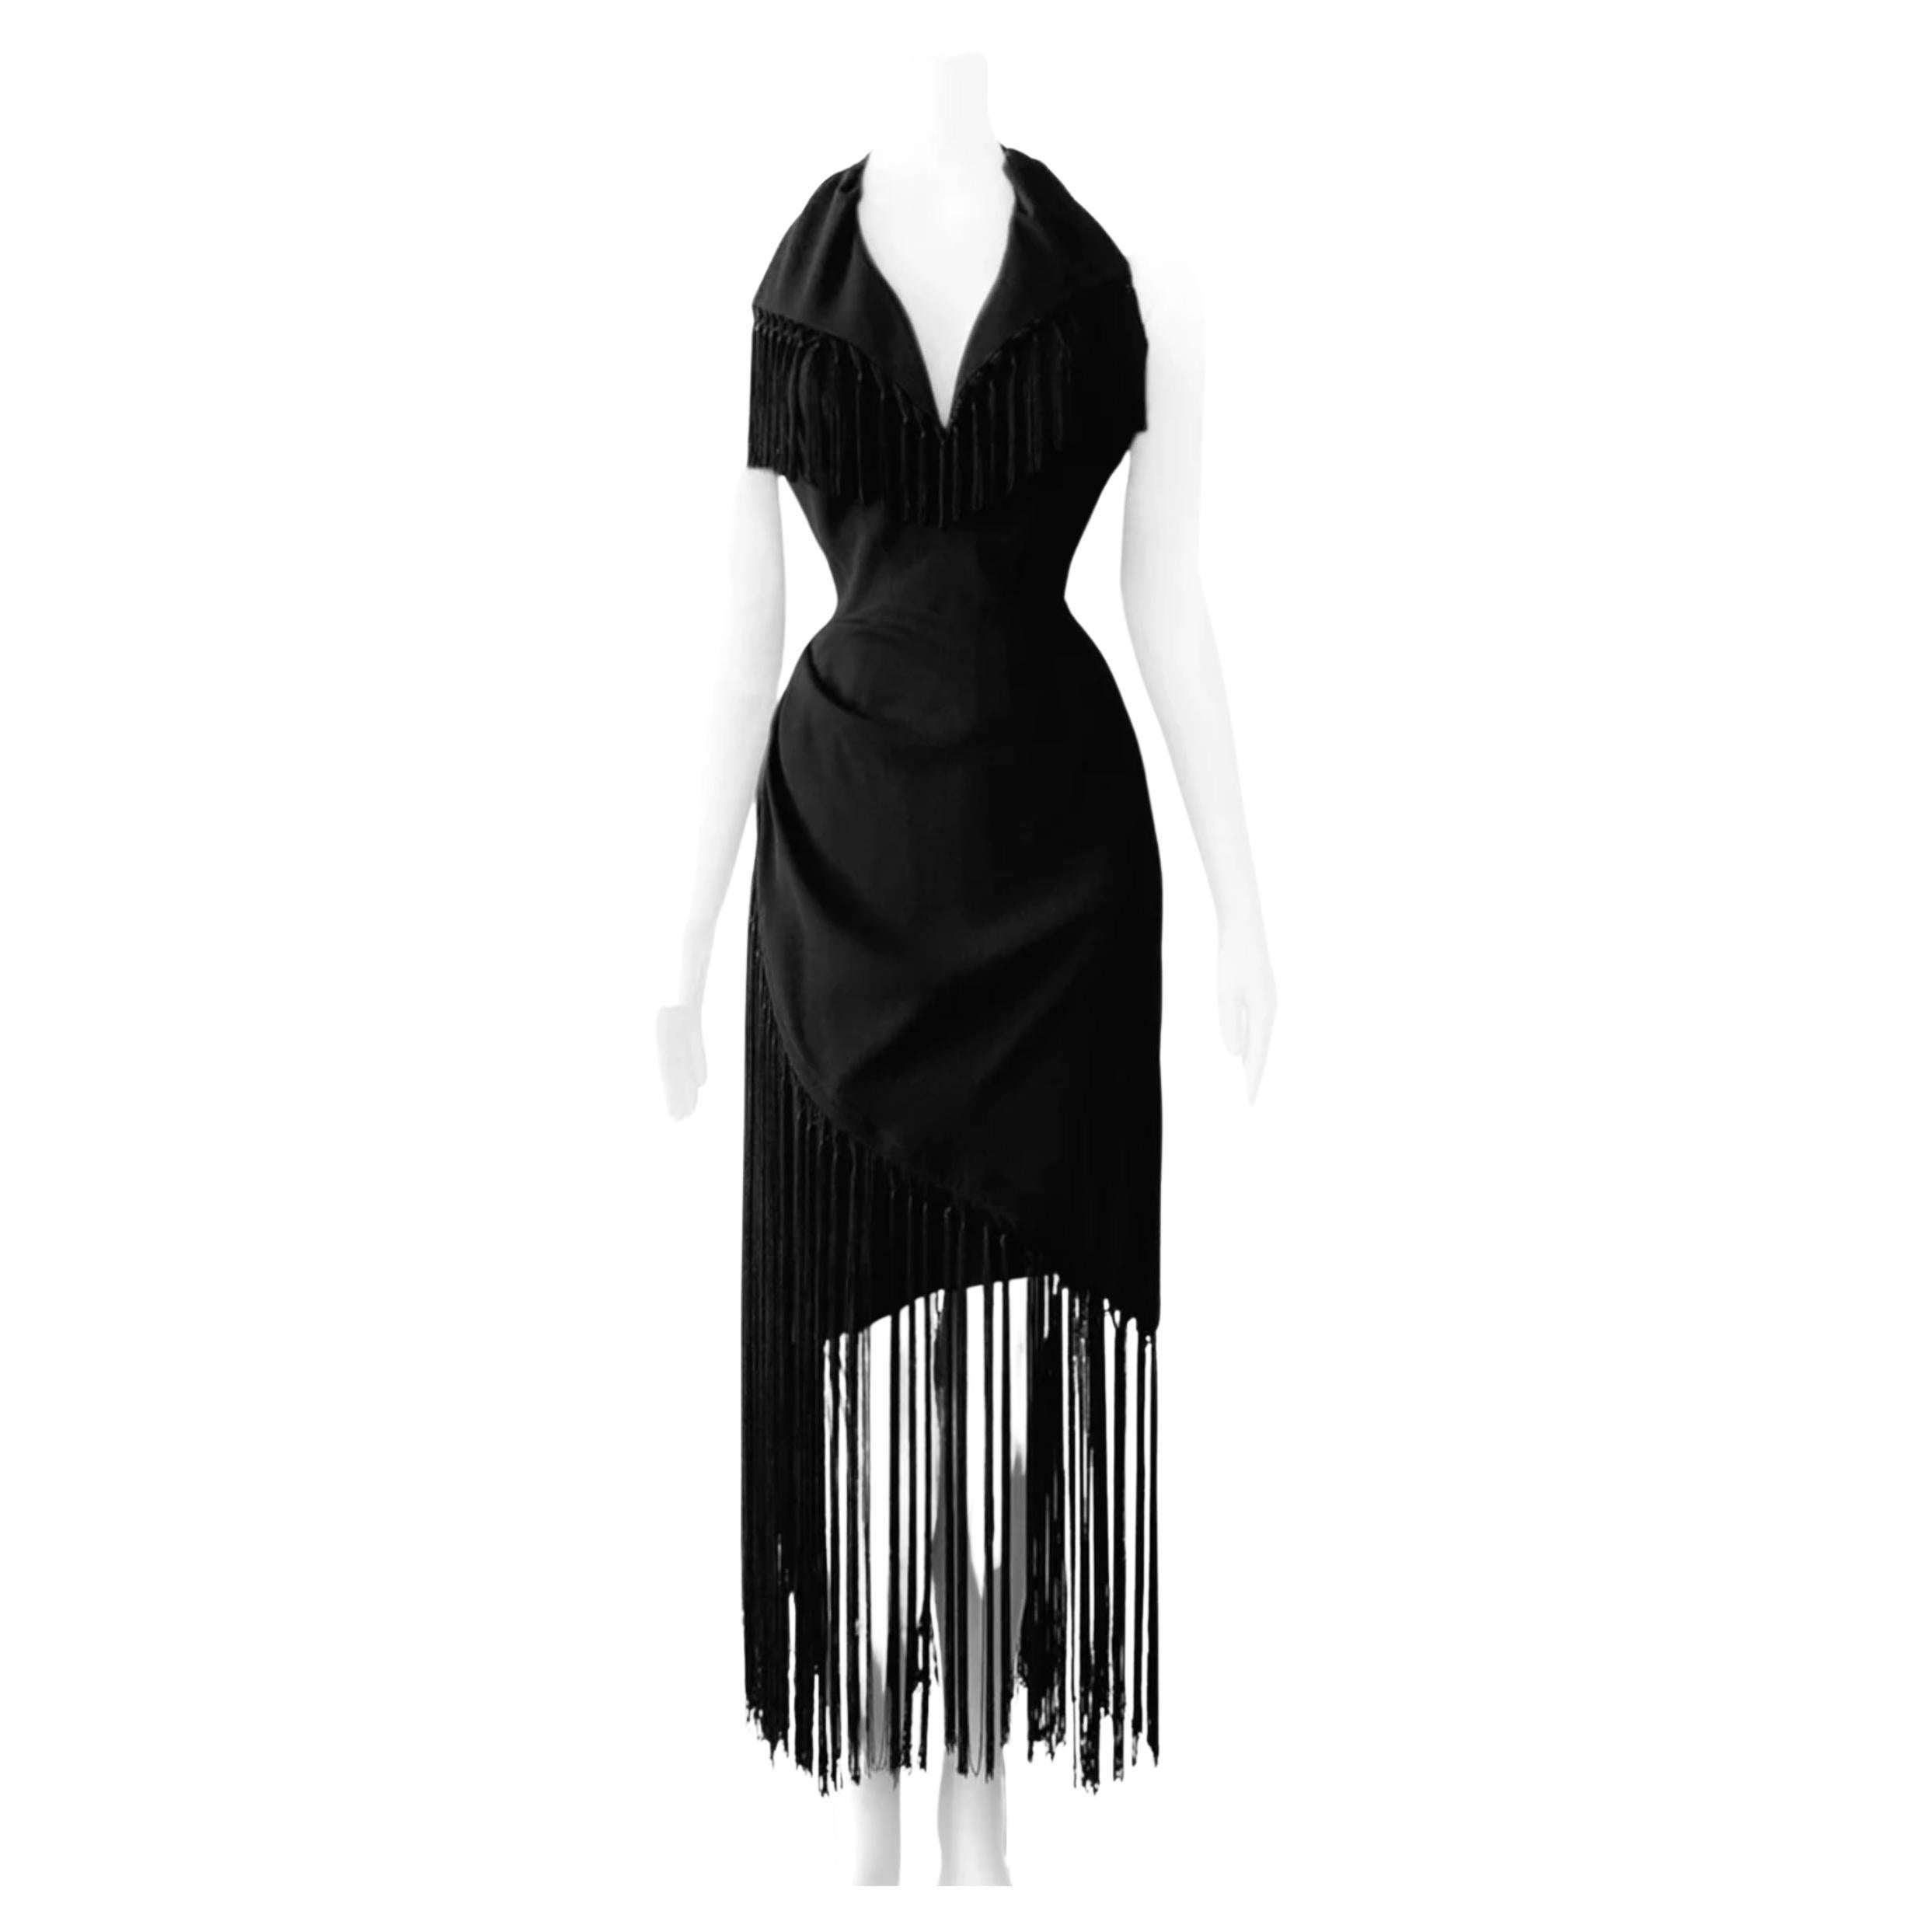 Thierry Mugler SS1997 Gorgeous Black Evening Dress Fringe Elegant Vintage 90s  For Sale